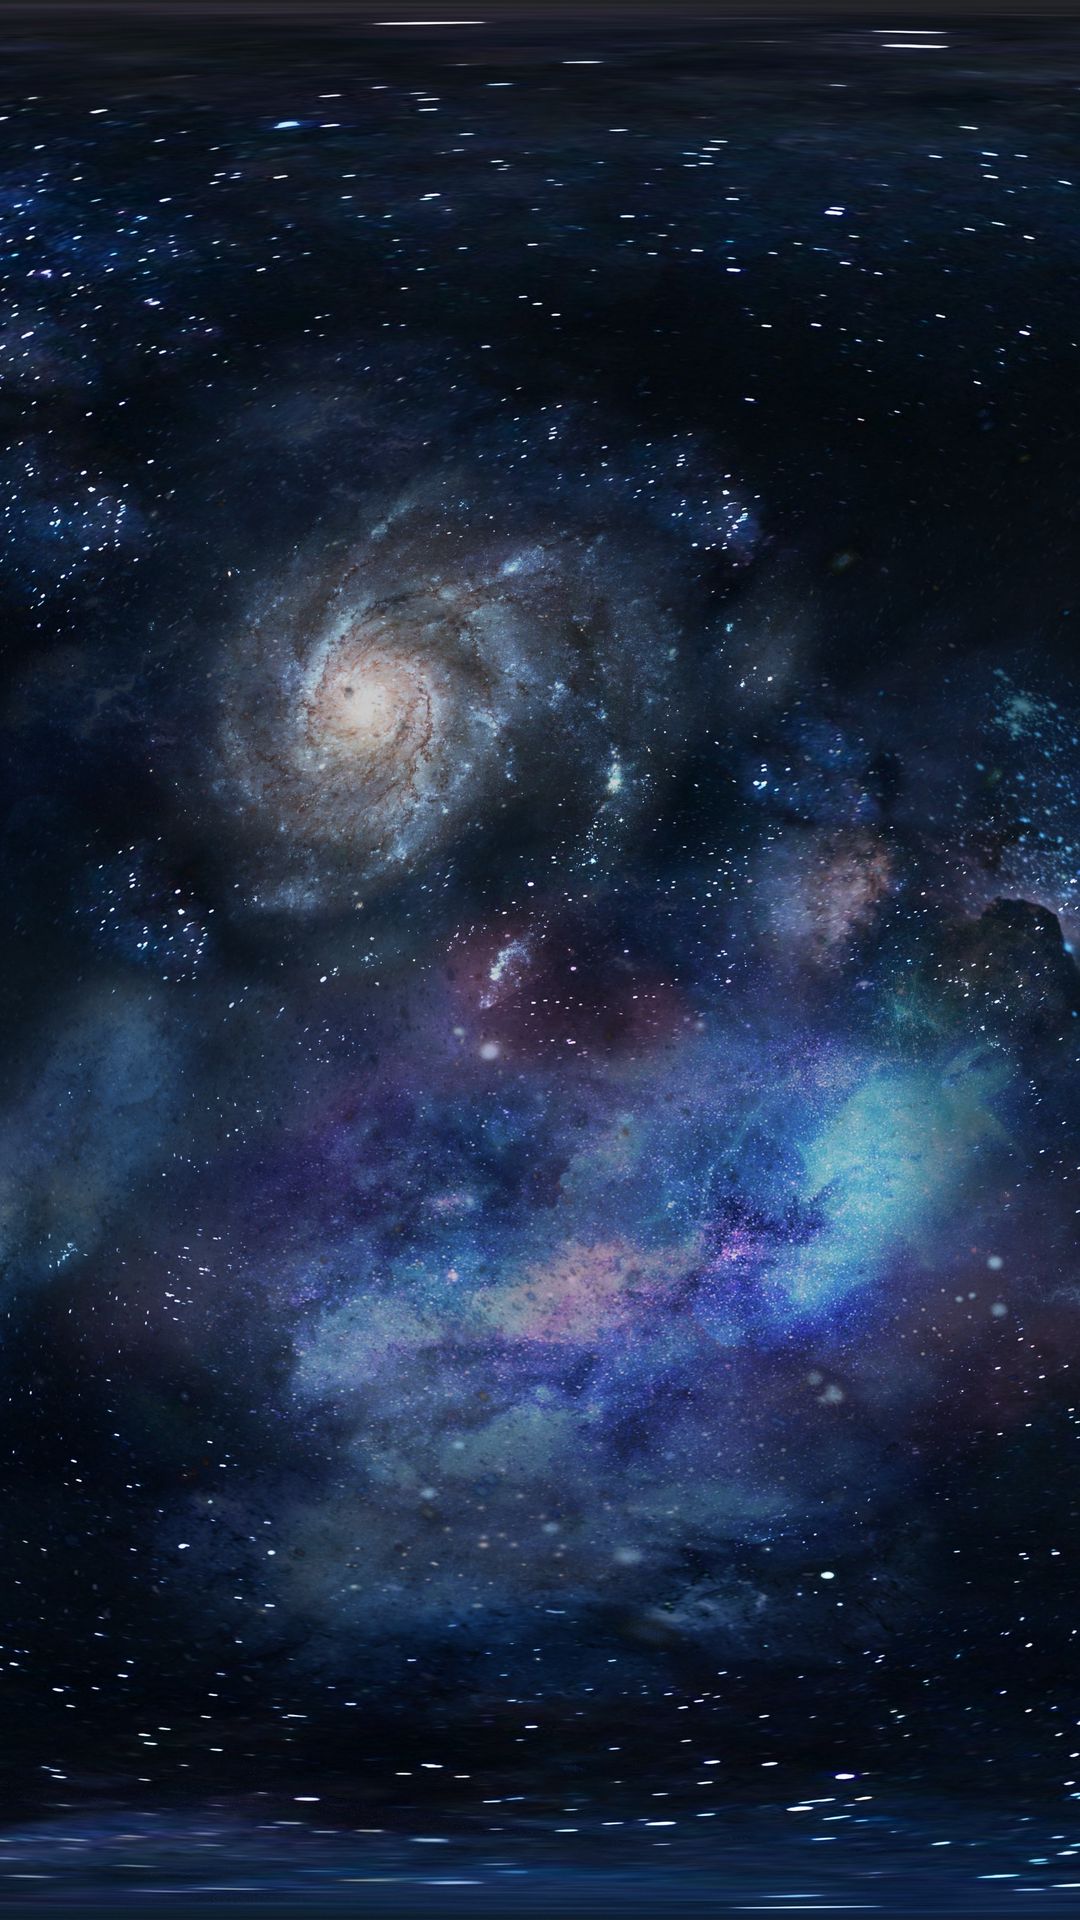 Vũ trụ và ngôi sao luôn là hai chủ đề hấp dẫn để tạo thành hình nền. Samsung Galaxy cũng không phải là một ngoại lệ. Tại WallpaperDog, bạn có thể tải về những hình nền 1080x1920 về vũ trụ, khí quyển và ngôi sao để tạo nên một màn hình đáng mơ ước.